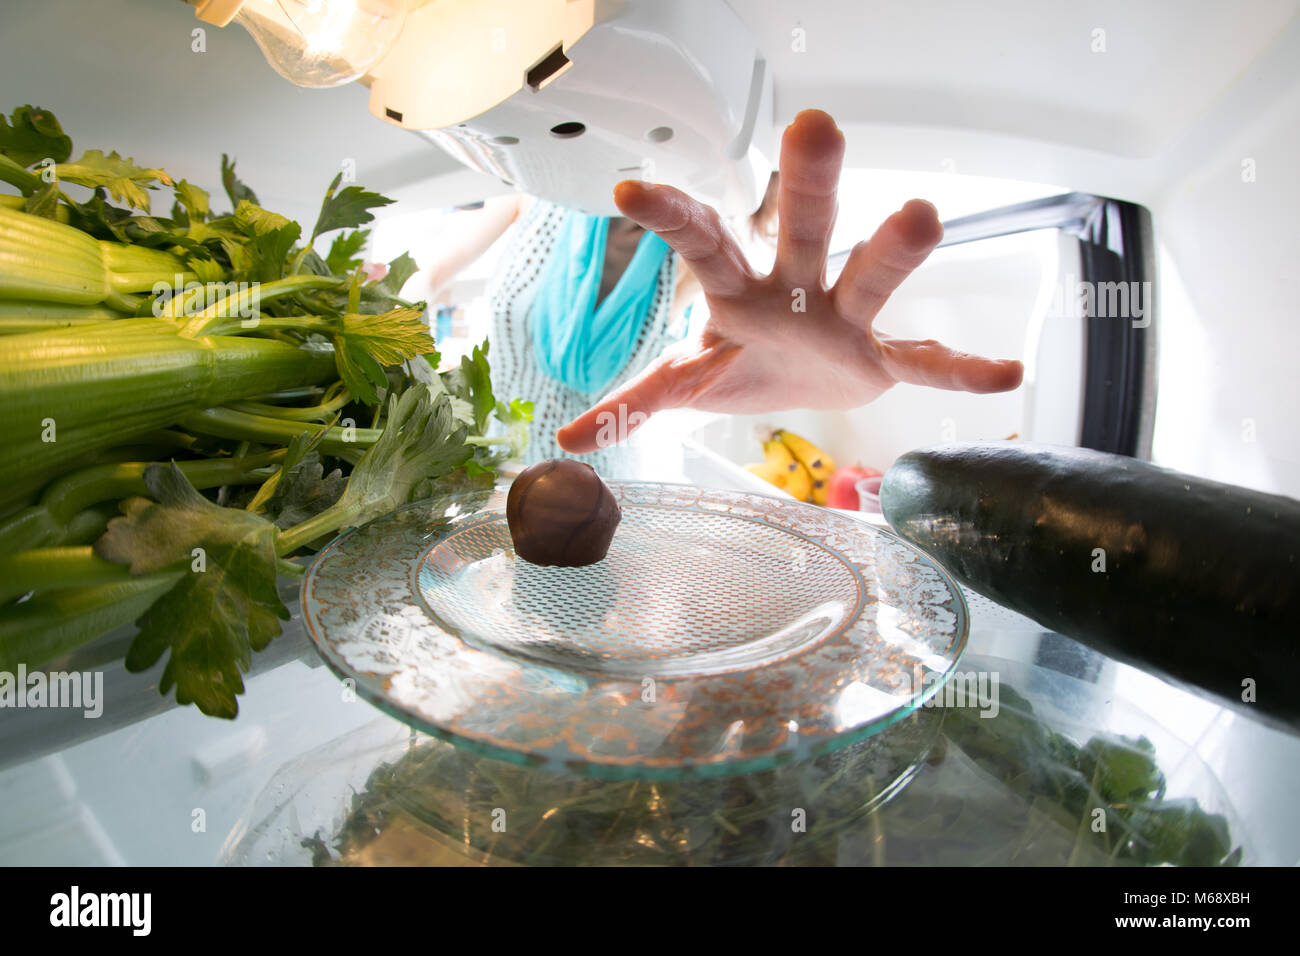 Lutte : régime alimentaire Une main attraper un petit bonbon dans le réfrigérateur ouvert plein de verts. Banque D'Images